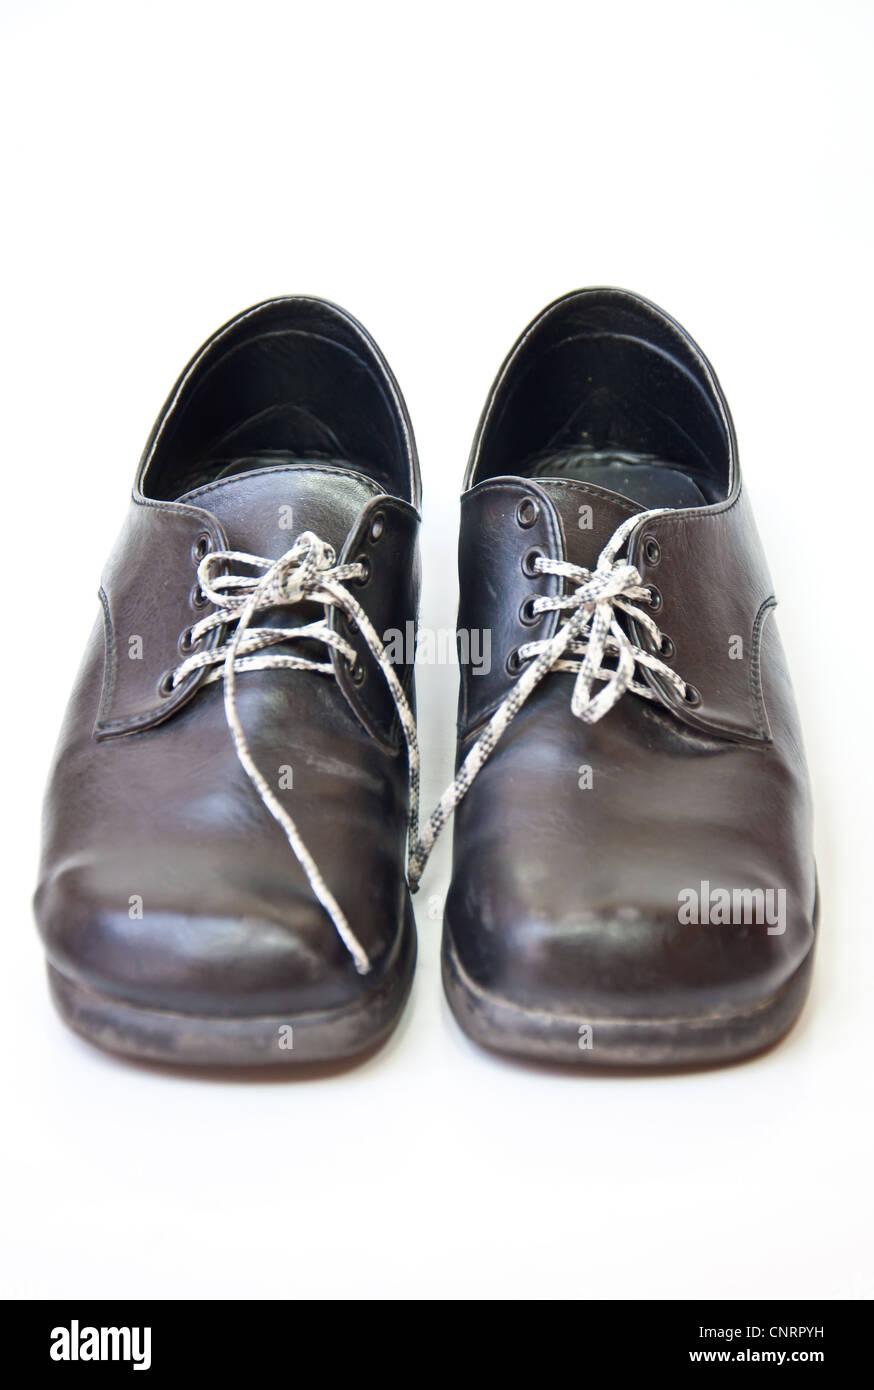 black shoe on white background Stock Photo - Alamy